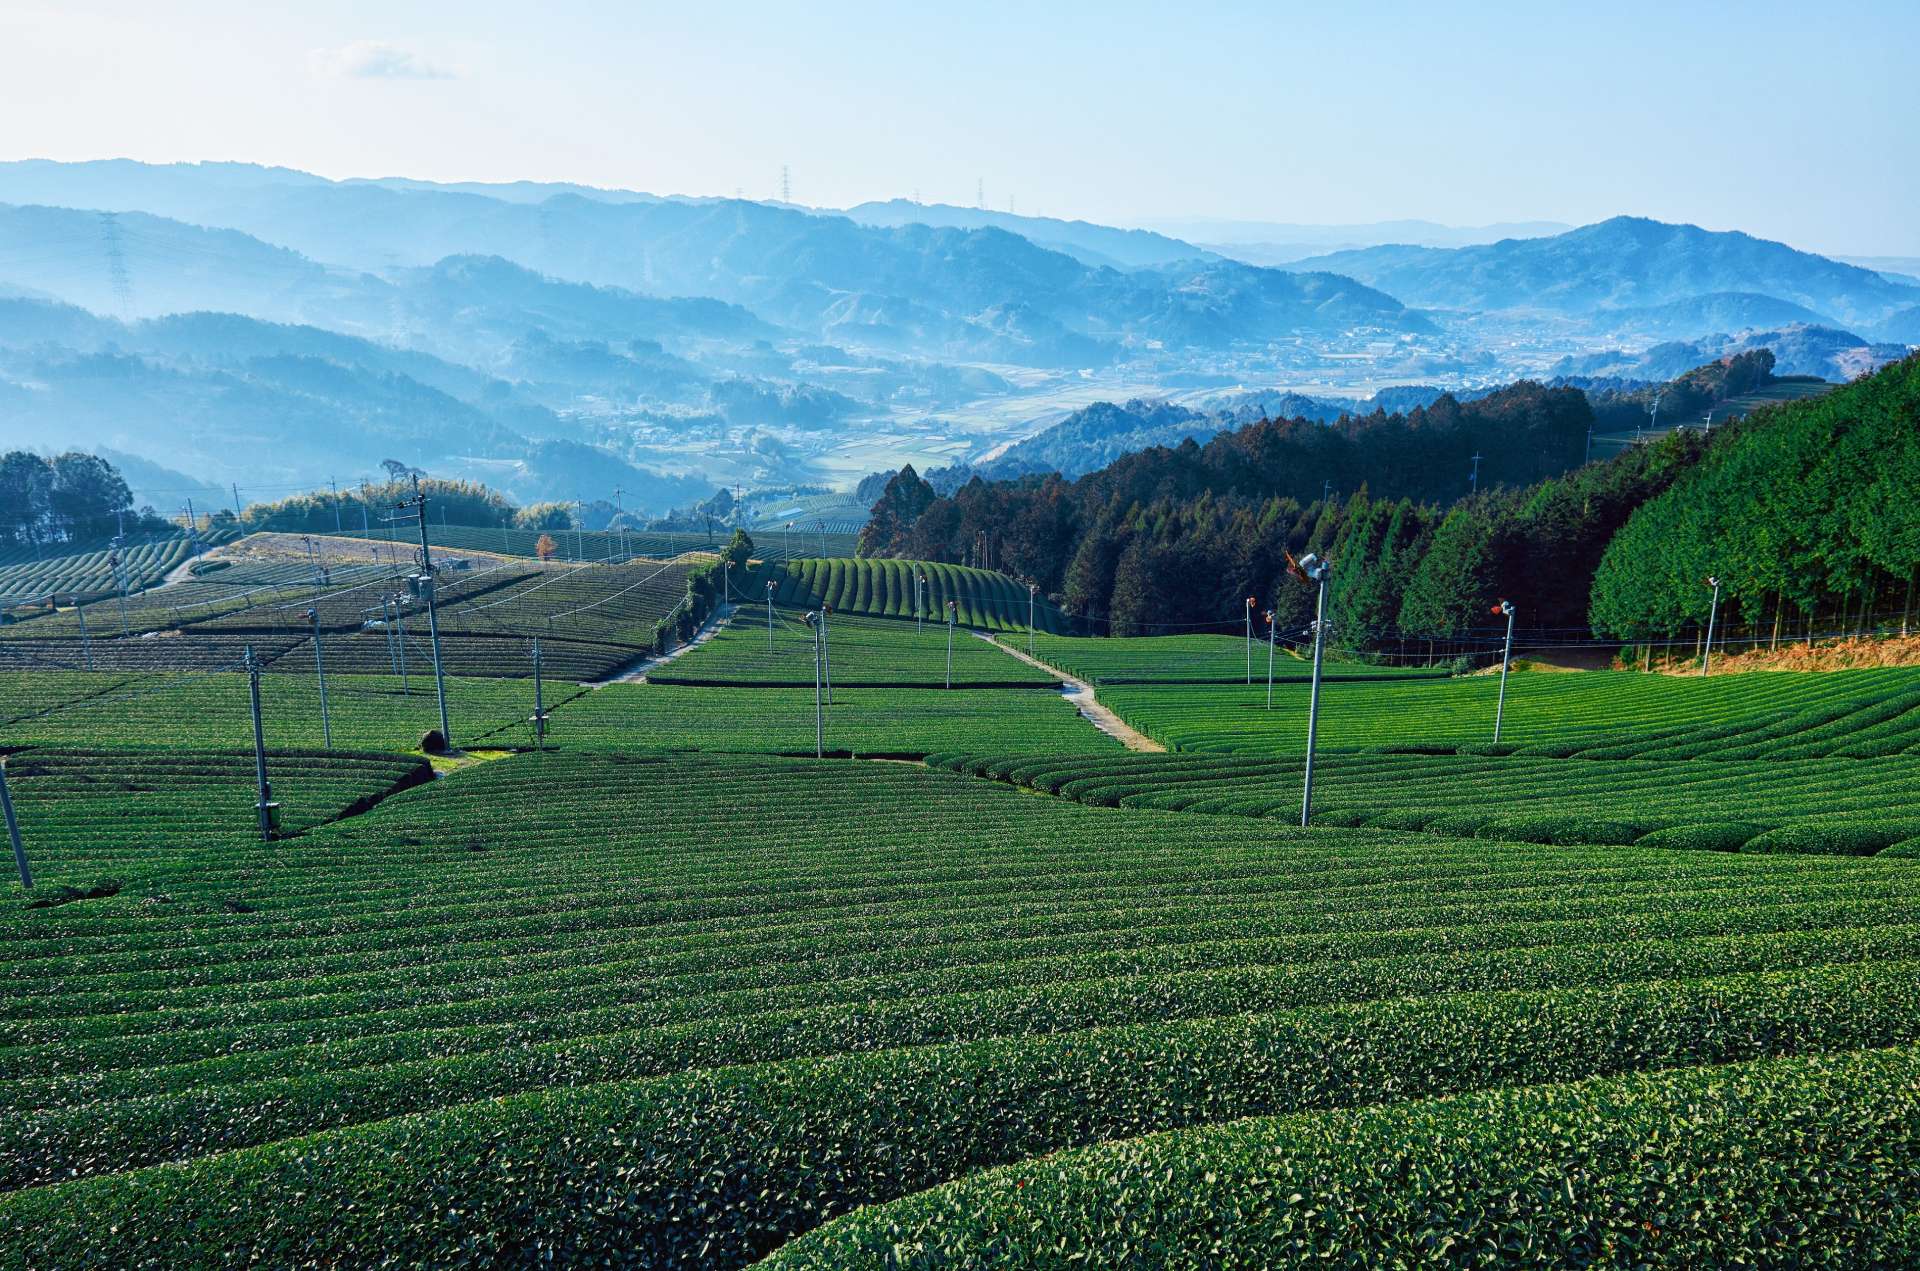 和束町原山の茶畑景観